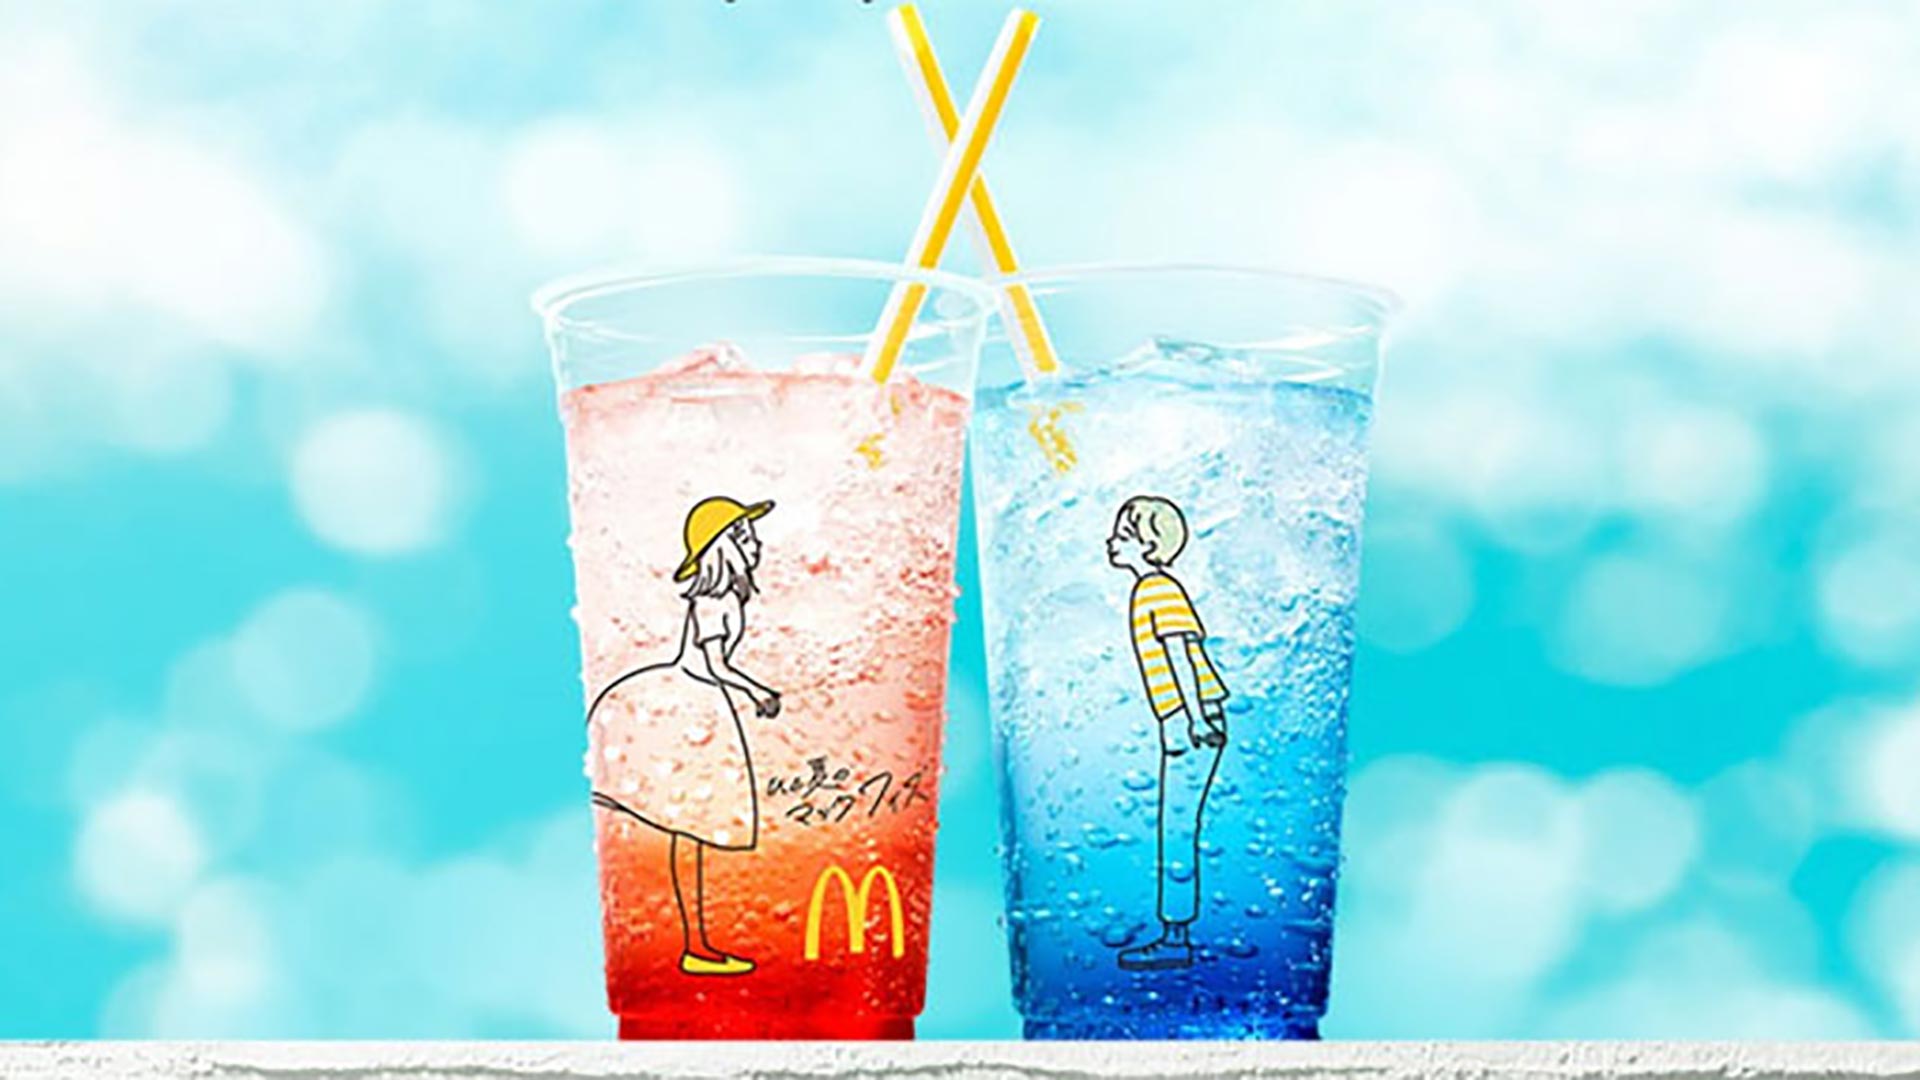 Los vasos de McDonald's que han inundado las redes de posturas sexuales